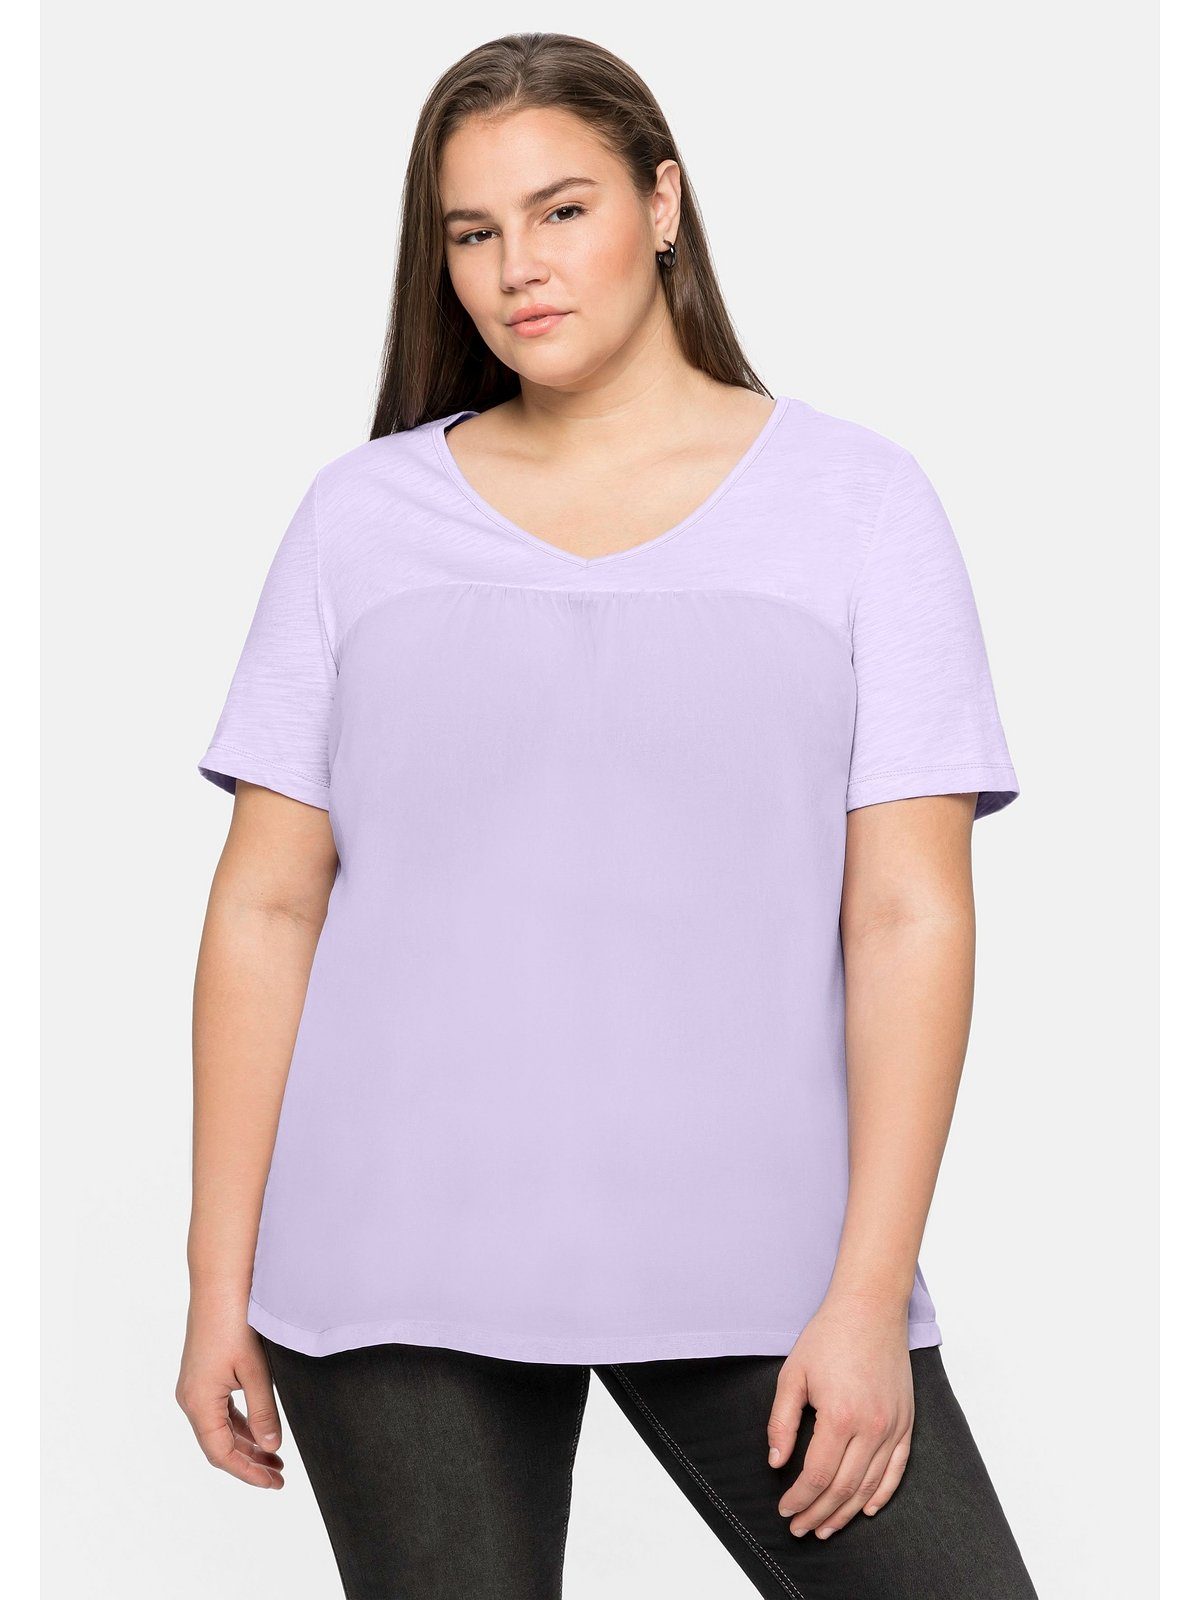 Sheego T-Shirt Große Größen im Materialmix, in A-Linie | V-Shirts